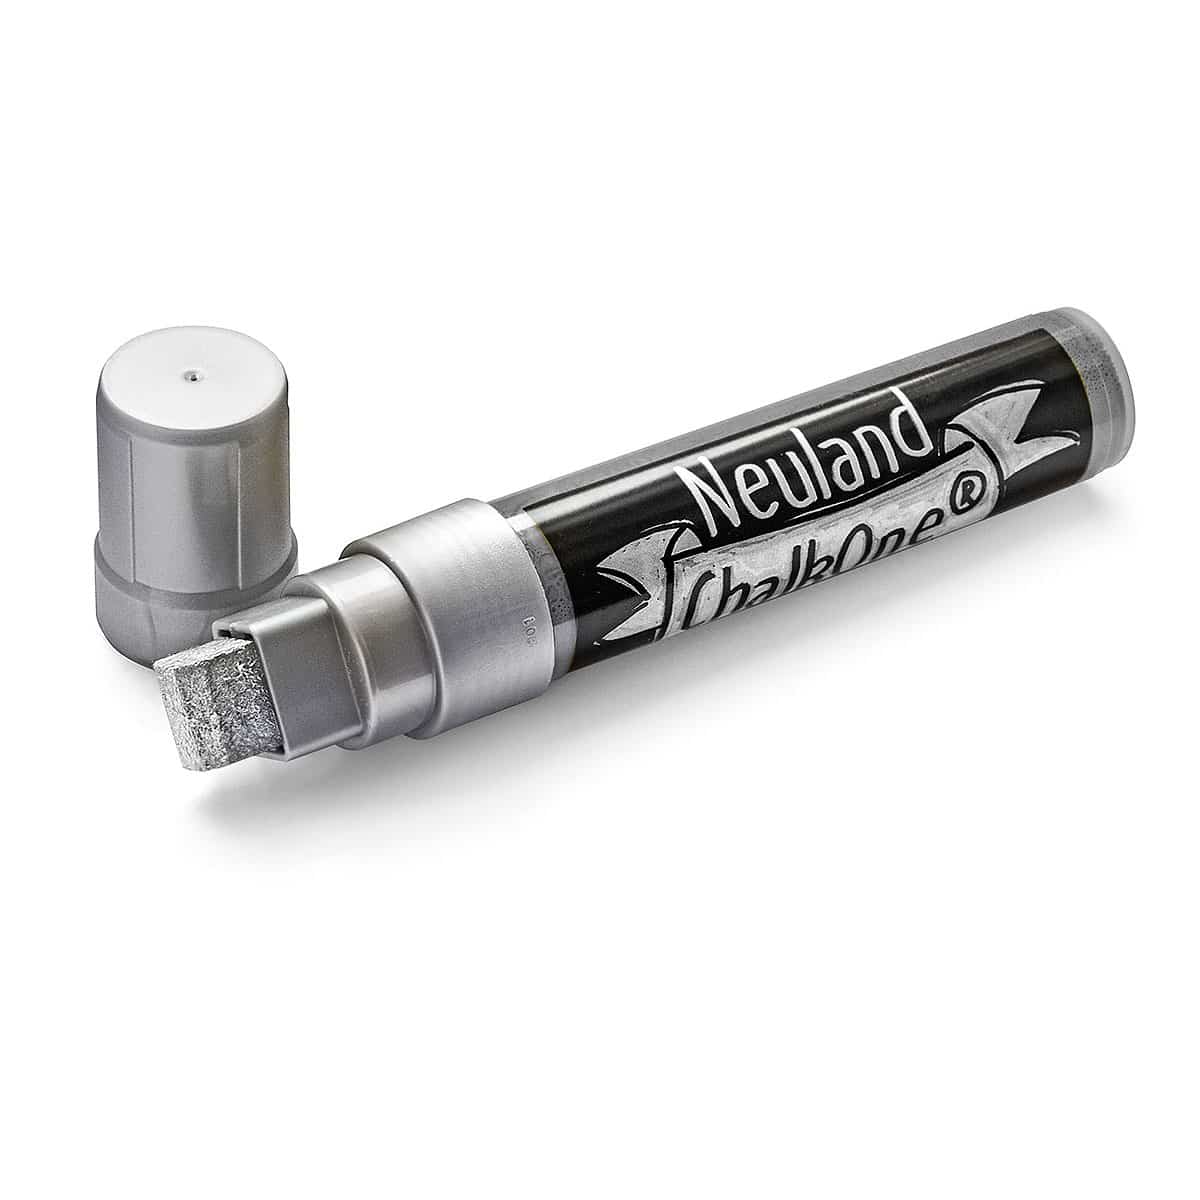 Neuland ChalkOne®, Keilspitze 5-15 mm – Einzelfarben- c551 silber